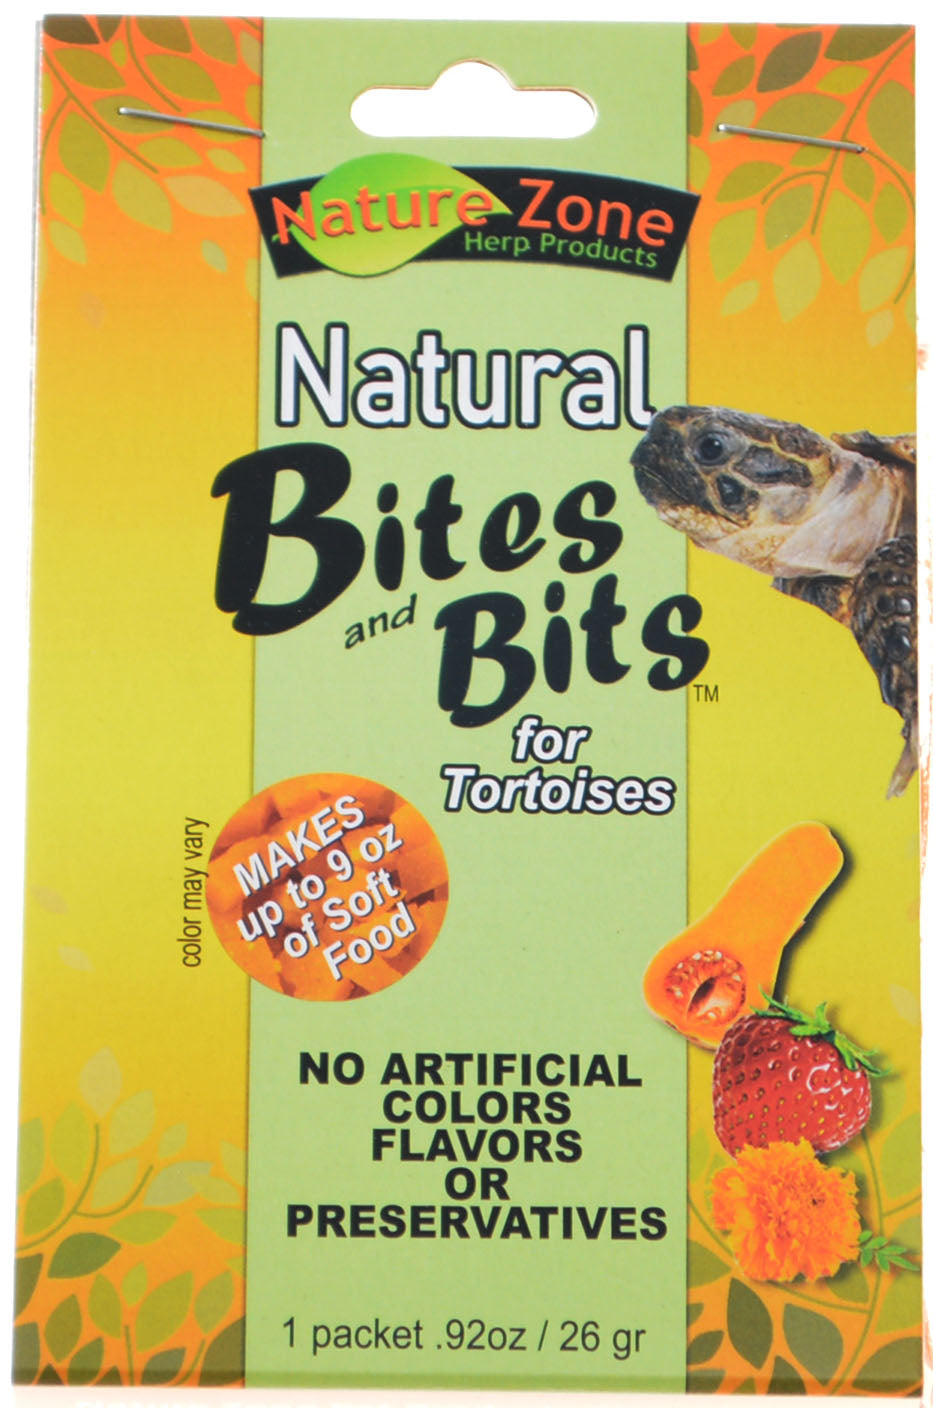 9 oz Nature Zone Natural Bites and Bits for Tortoises